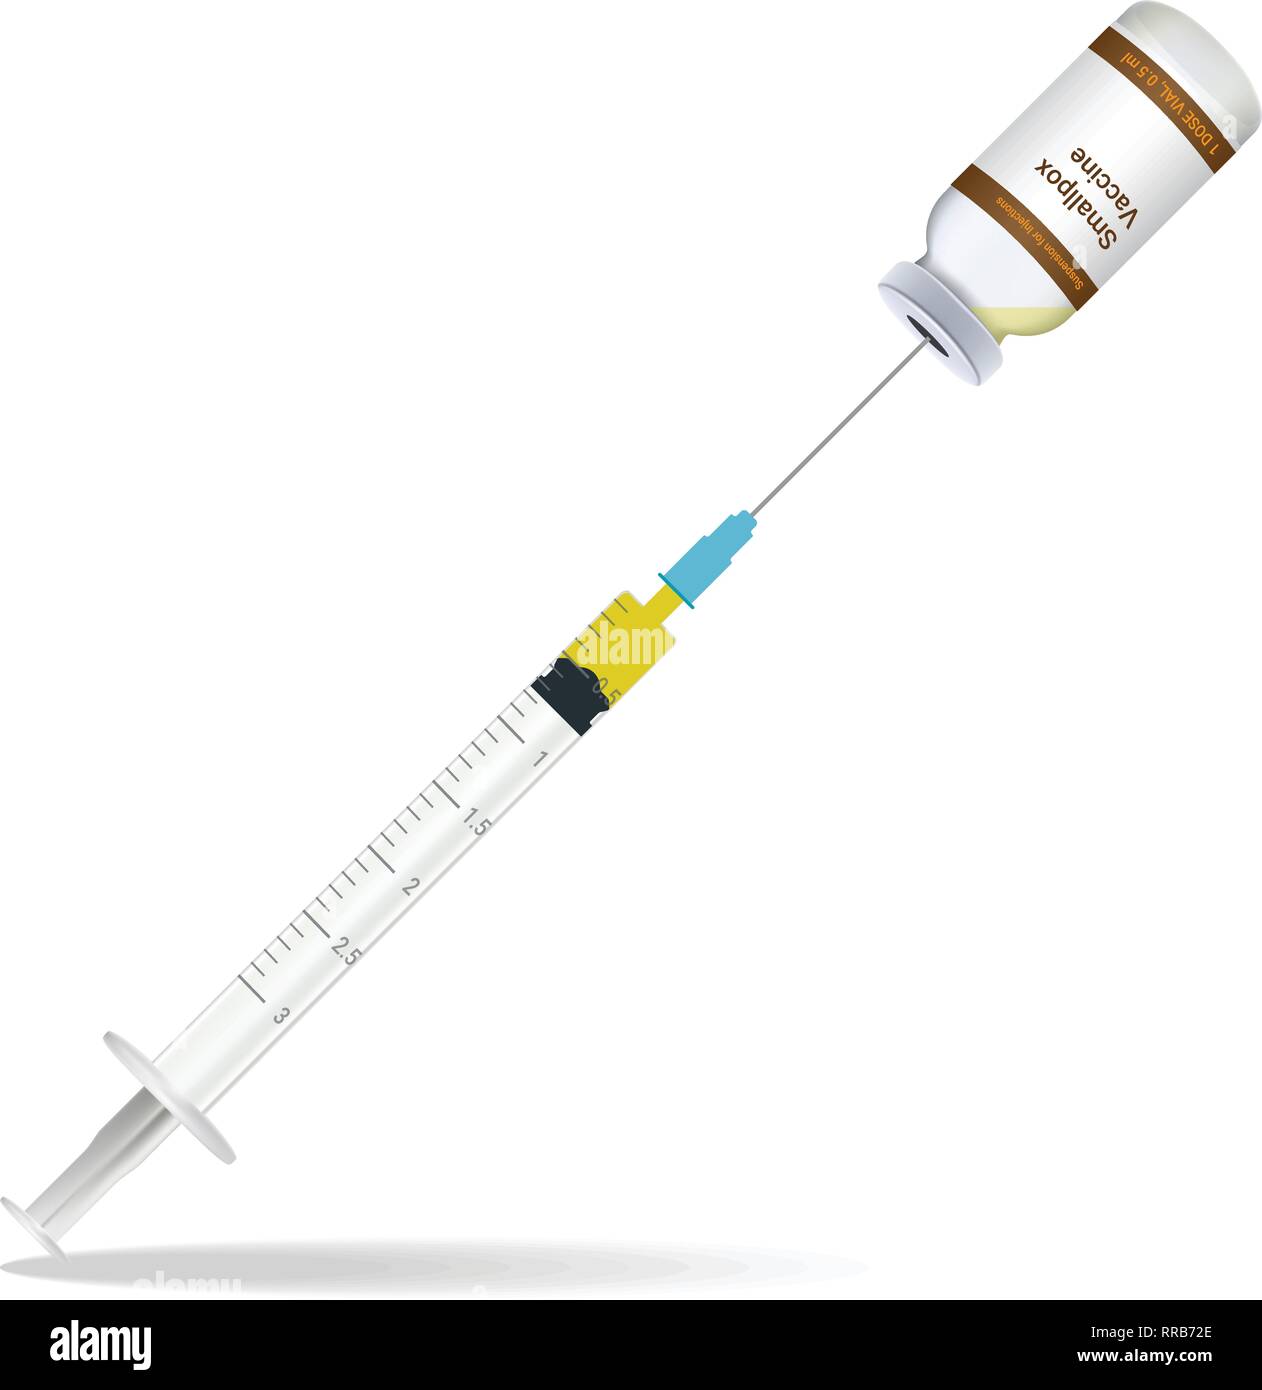 Immunisierung, Pockenimpfstoff Spritze enthalten einige Einspritz- und Einspritzanlage Flasche isoliert auf einem weißen Hintergrund. Vector Illustration. Stock Vektor